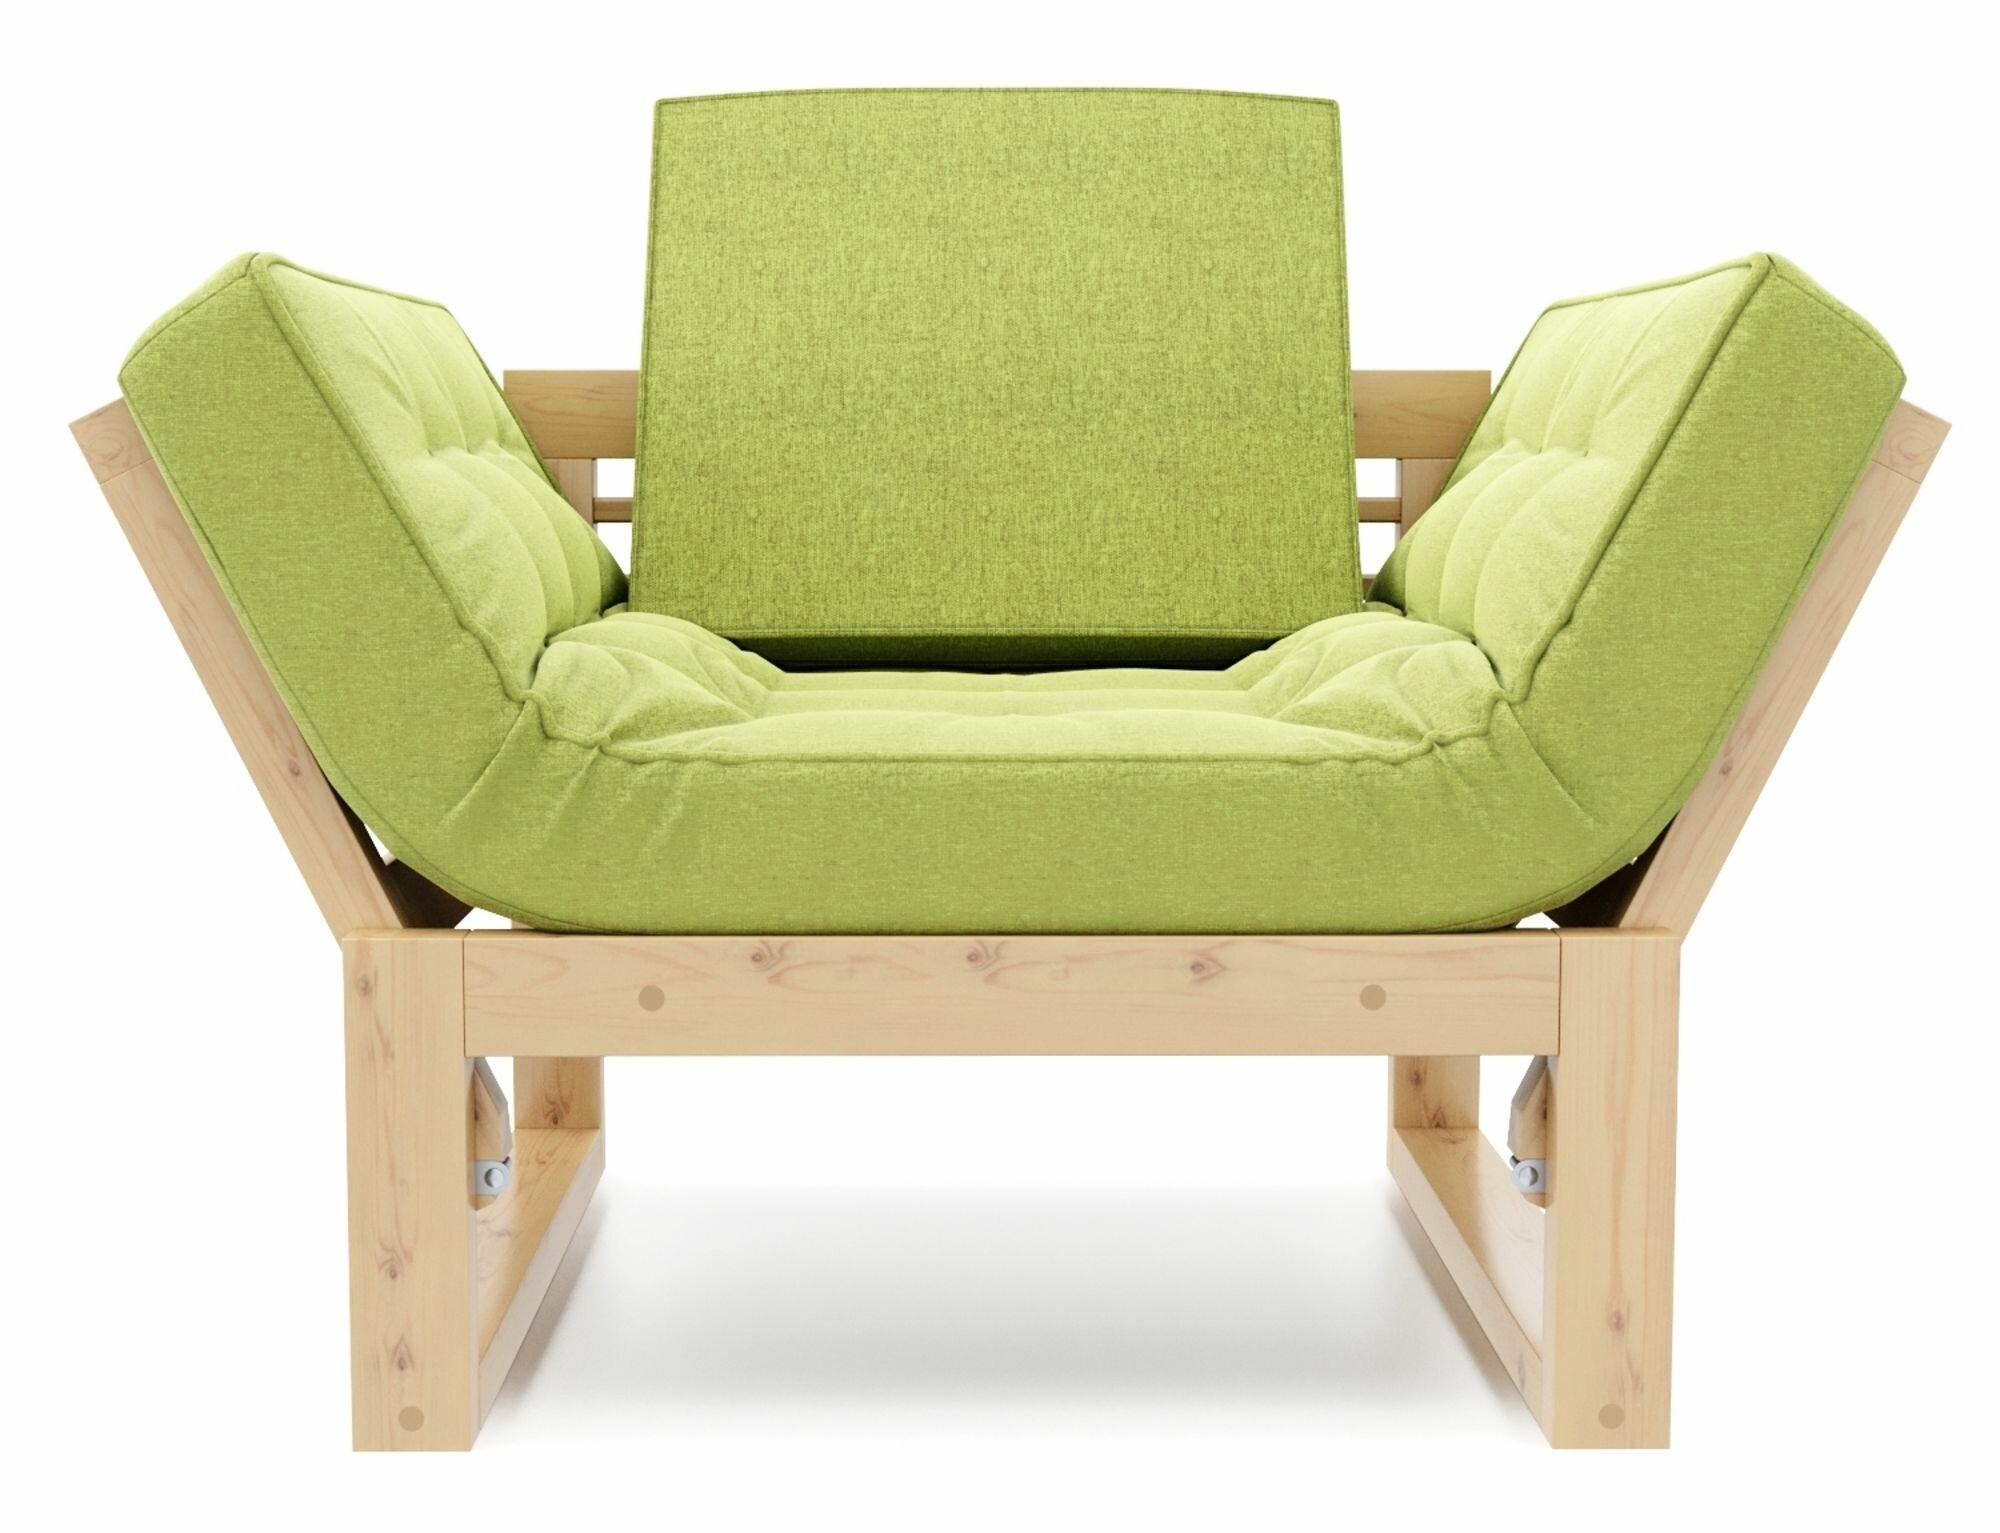 Кресло балтик, зеленый-сосна, рогожка, массив дерева, с подлокотниками, садовое, на дачу, скандинавский лофт